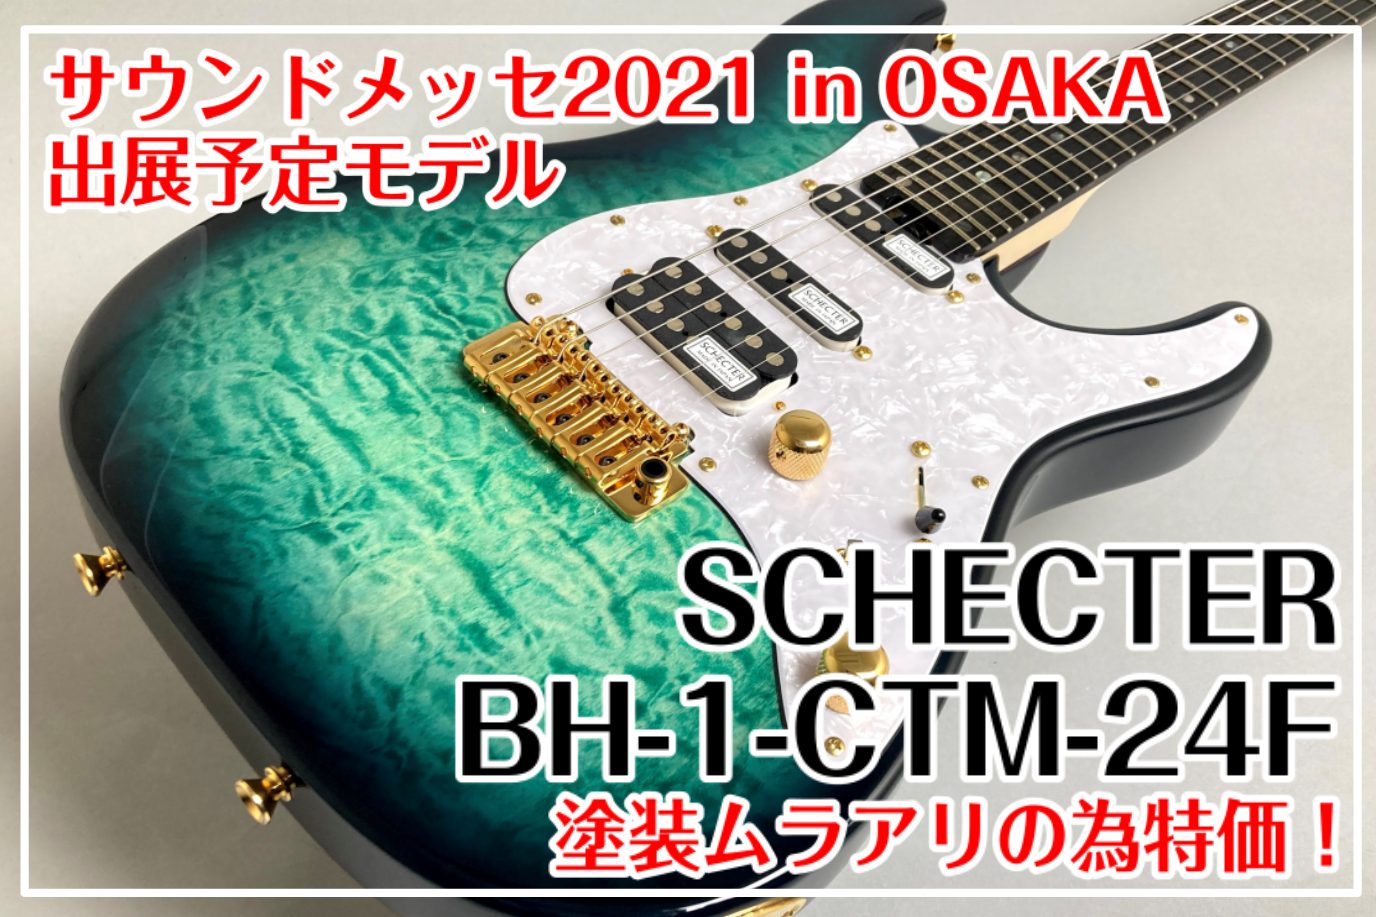 【サウンドメッセ2021】SCHECTER BH-1-CTM-24F 特価のご案内！ -サウンドメッセin大阪2021出展用モデル-